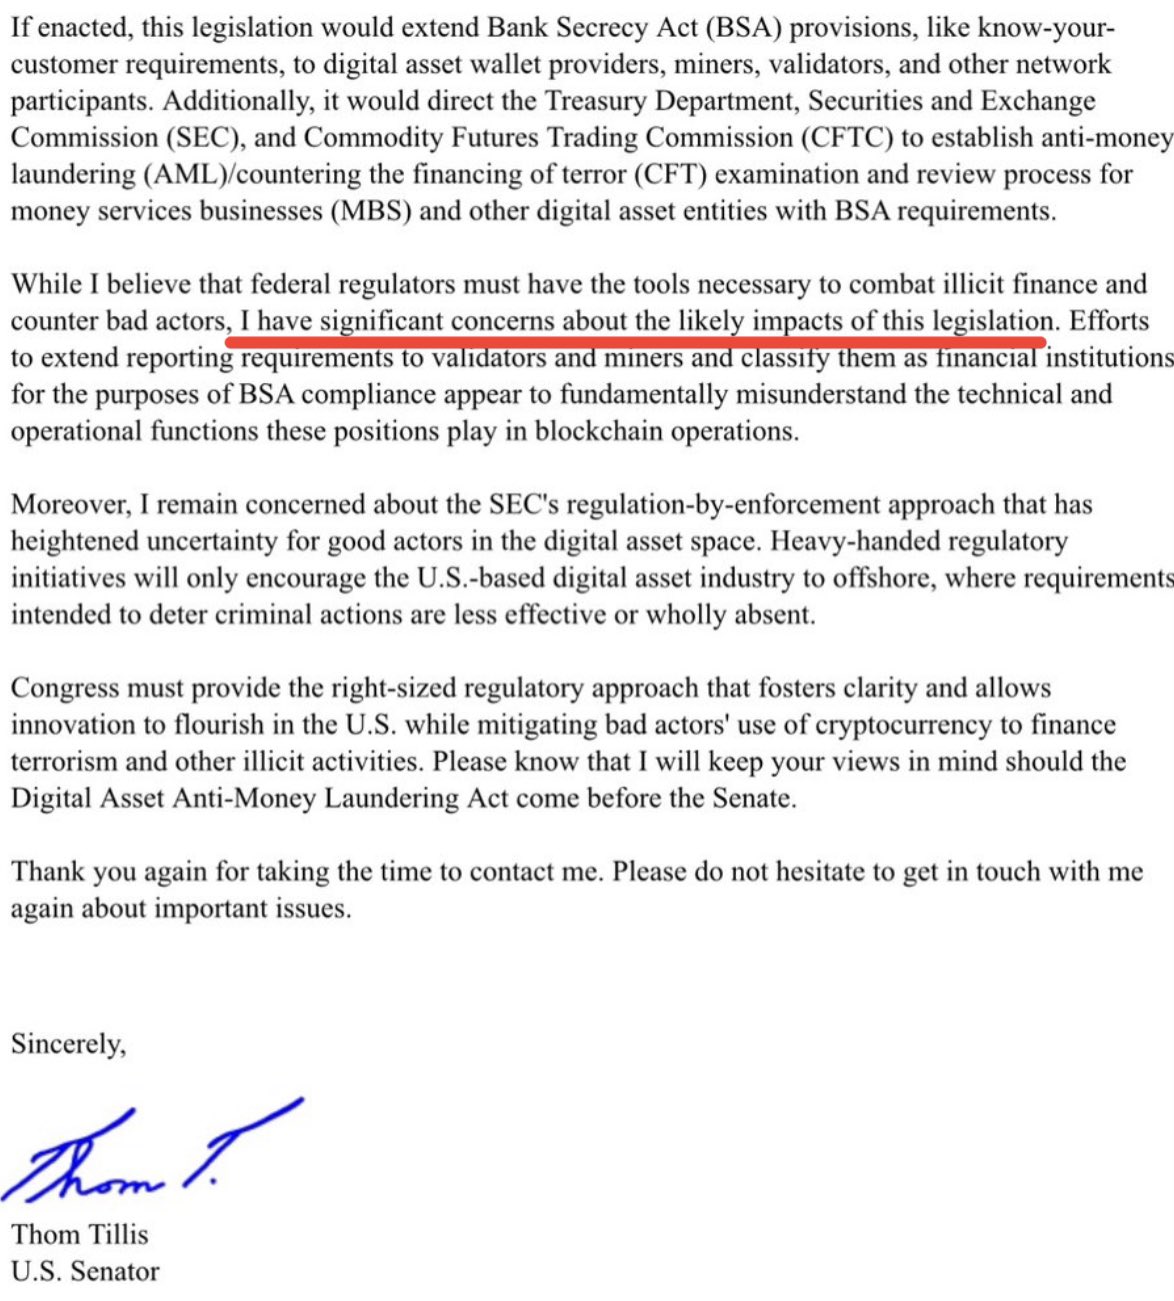 Сенатор США выразил обеспокоенность по поводу законопроекта Элизабет Уоррен о биткойнах и подхода SEC к регулированию